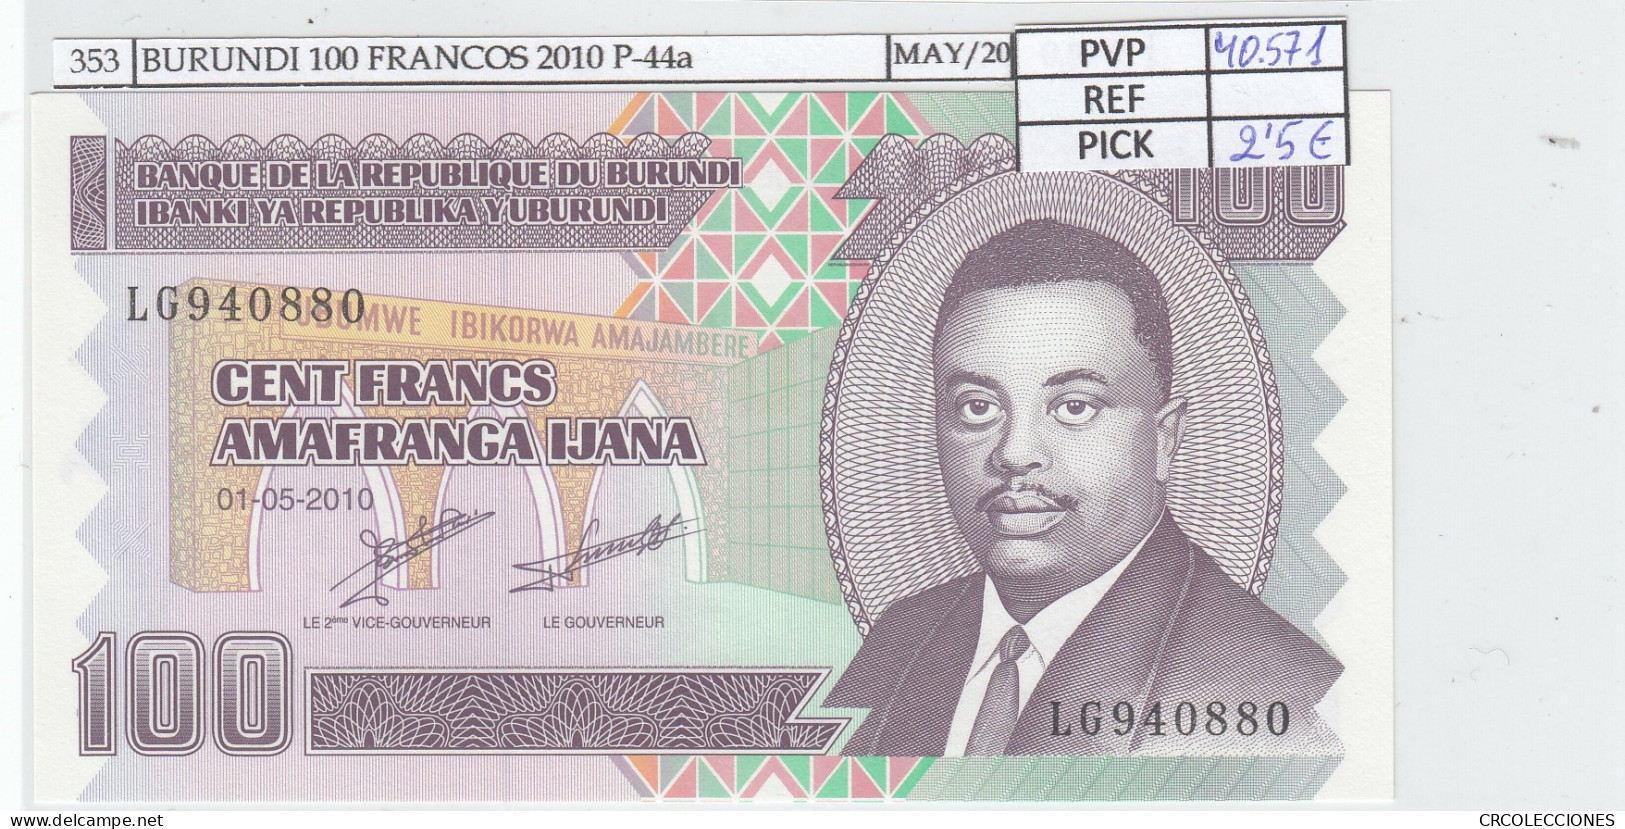 BILLETE BURUNDI 100 FRANCOS 2010 P-44a SIN CIRCULAR - Other - Africa